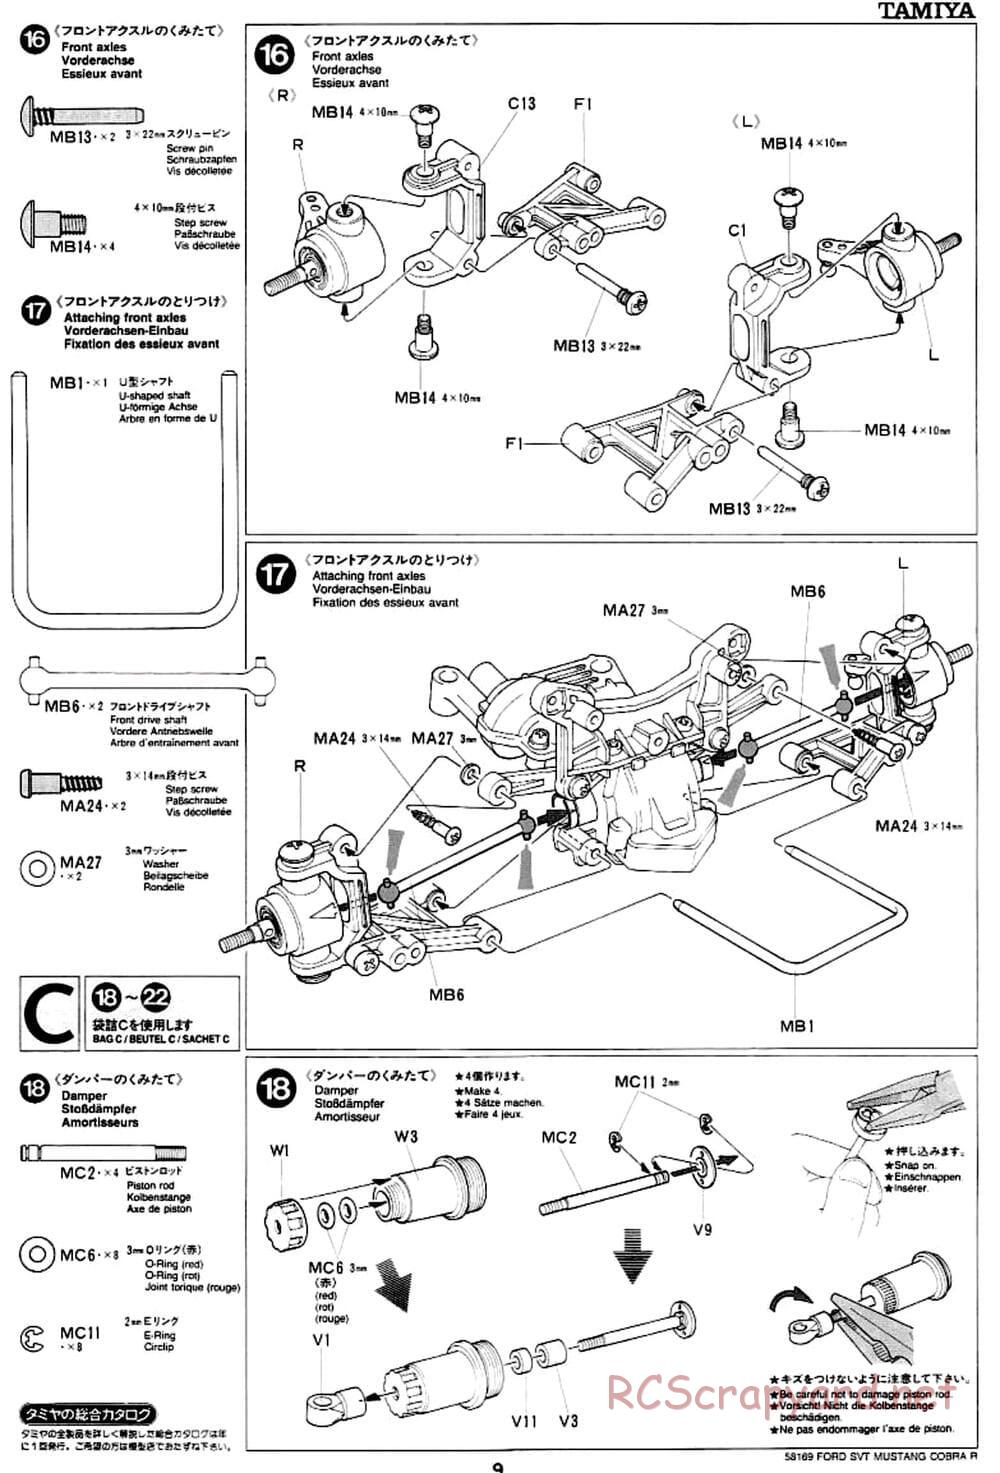 Tamiya - Ford SVT Mustang Cobra-R - TA-02 Chassis - Manual - Page 9